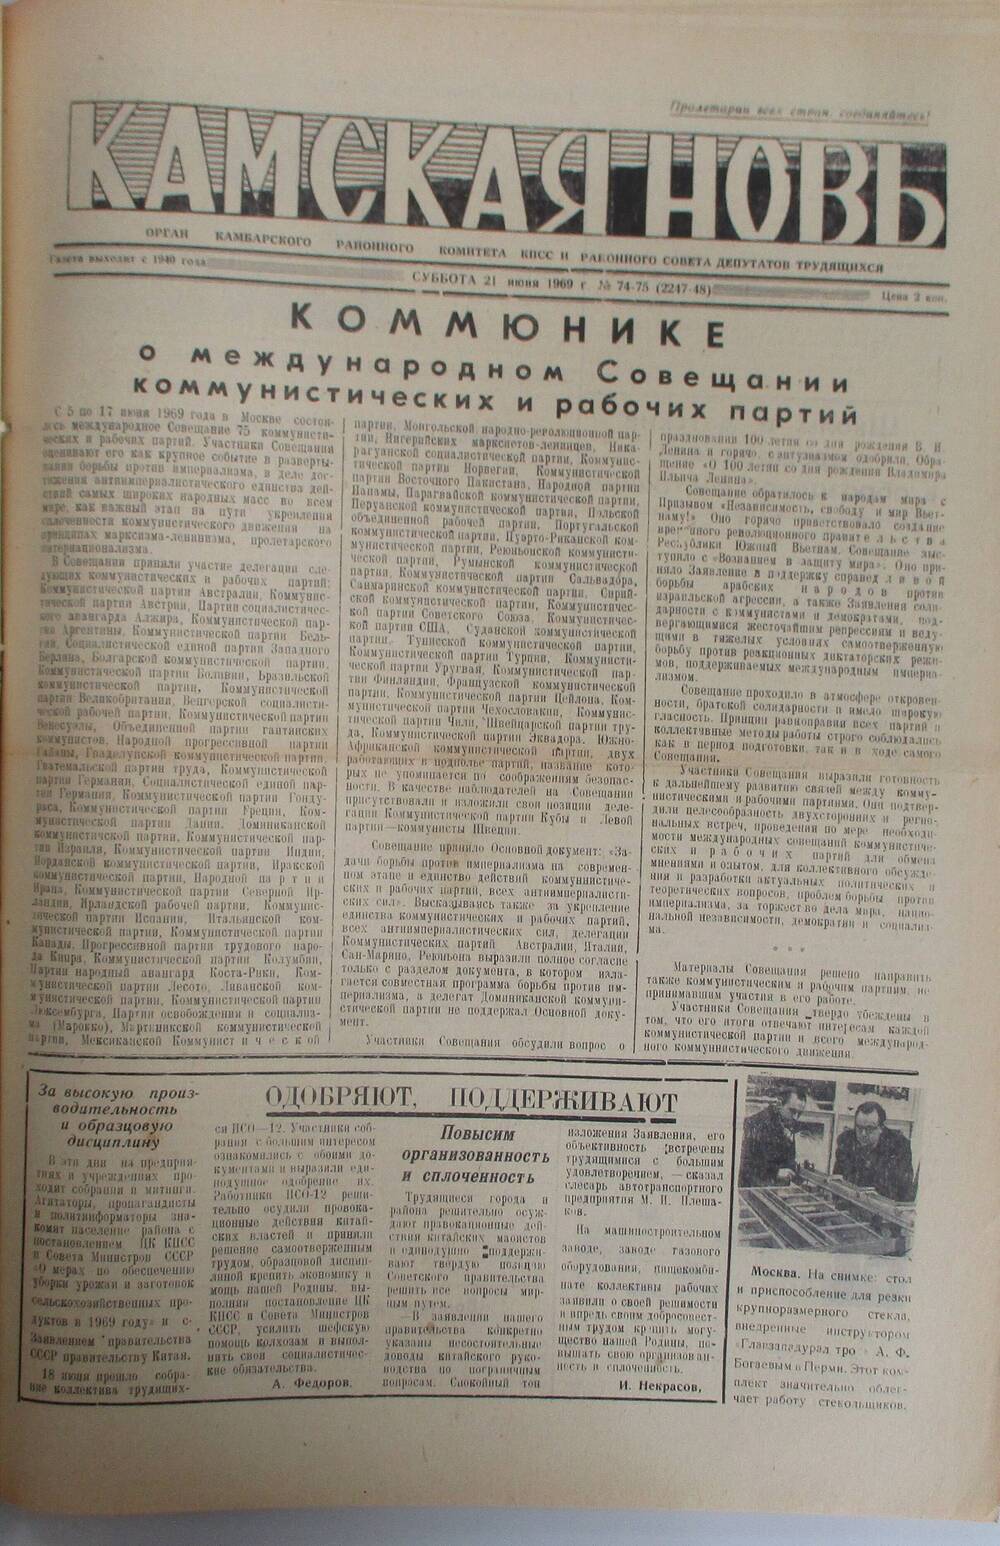 Газеты Камская новь за 1969 год, орган Камбарского райсовета и  РККПСС, с №1 по №66, с №68 по №156. №74-75.